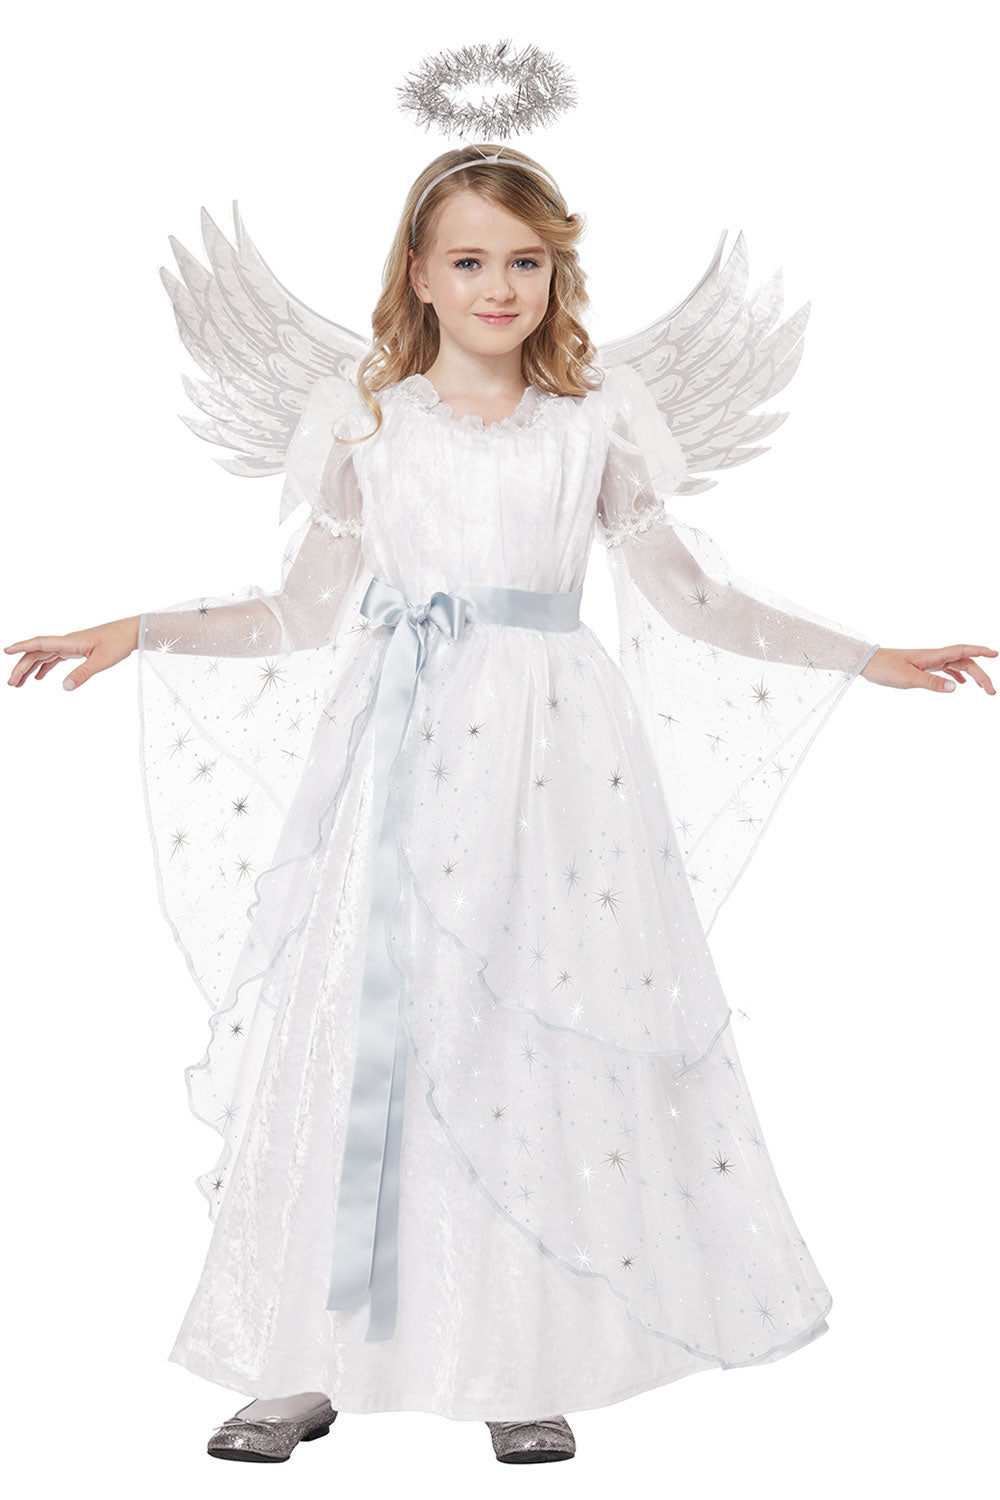 STARLIGHT ANGEL/CHILD California Costume 00421